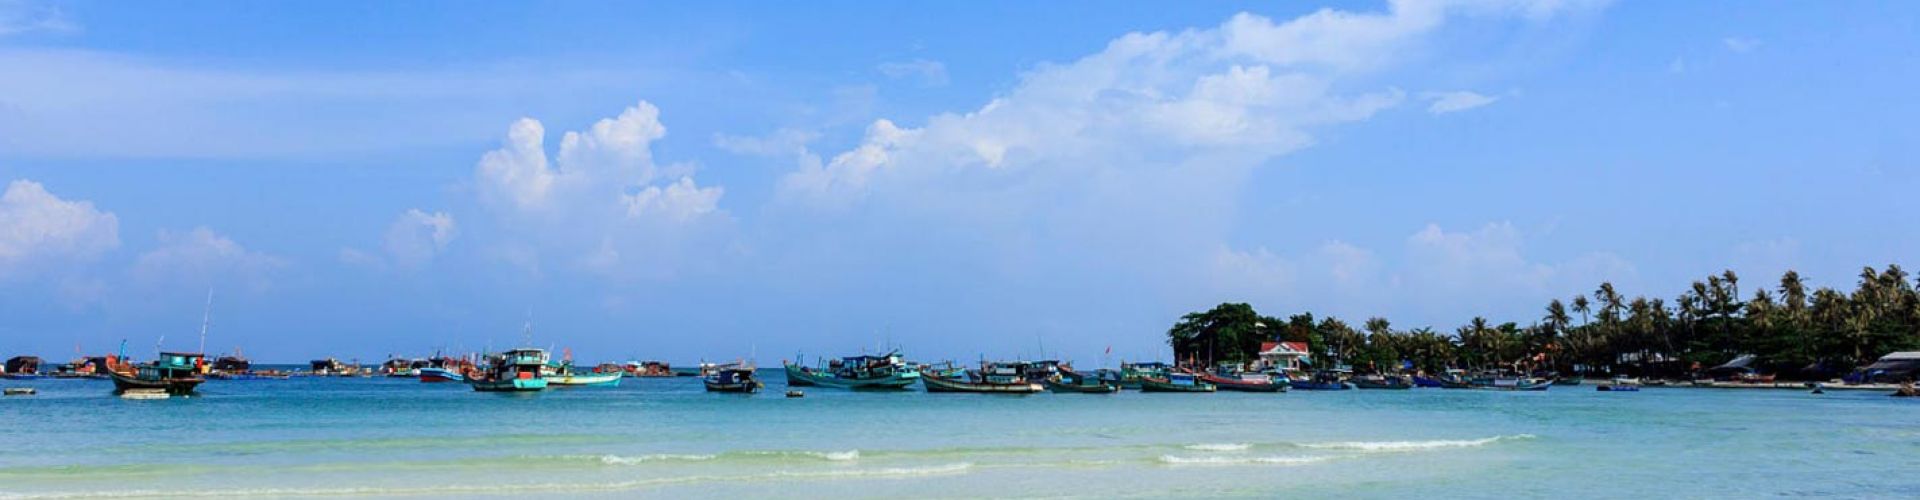 Destinations in Kien Giang - Vietnam Travel Group